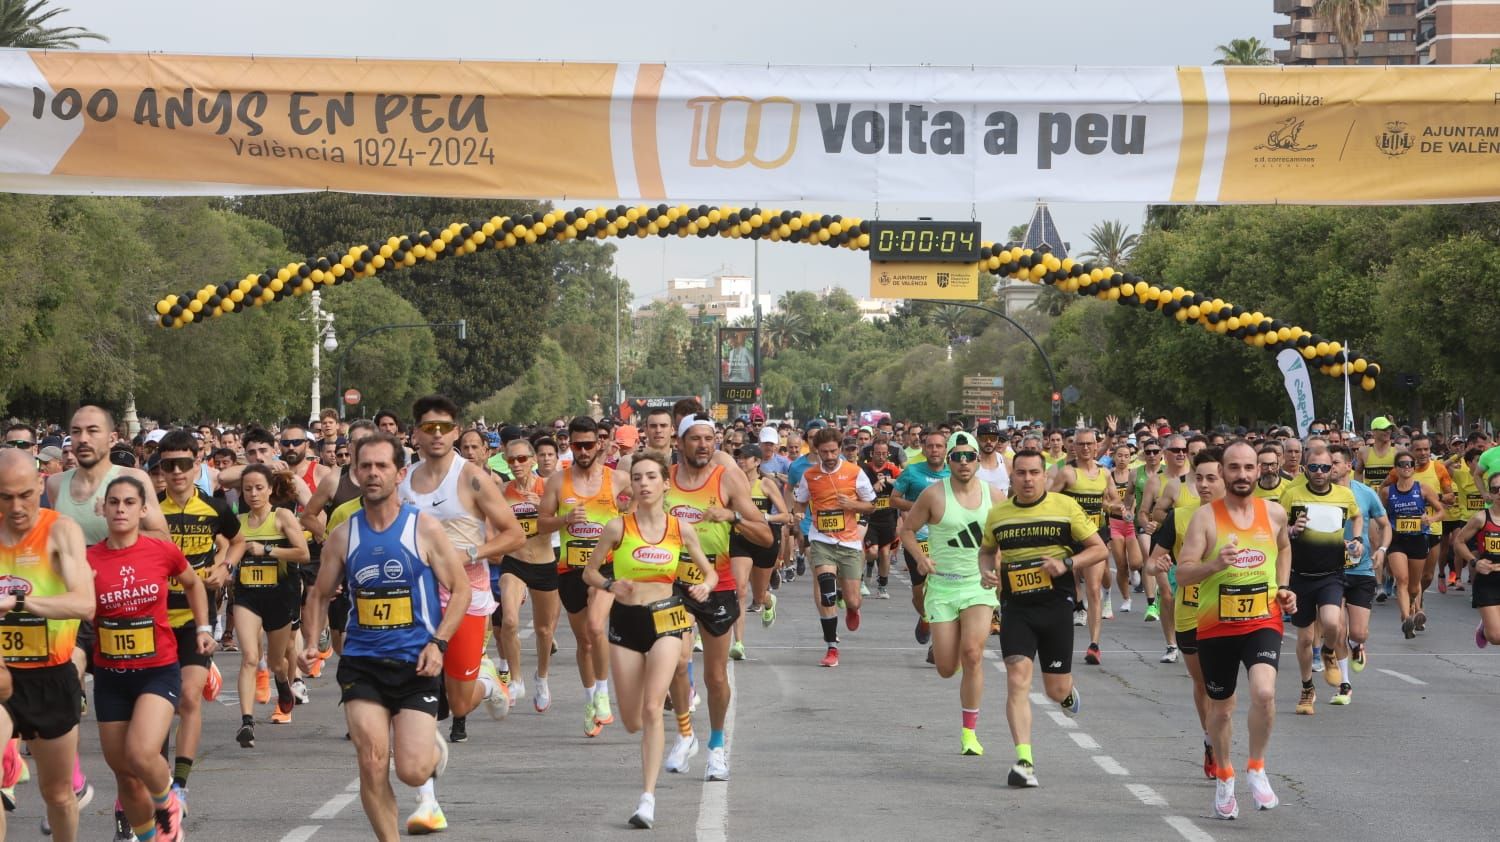 La Volta a Peu 2024 reúne a más de 7.000 corredores en su 100 cumpleaños